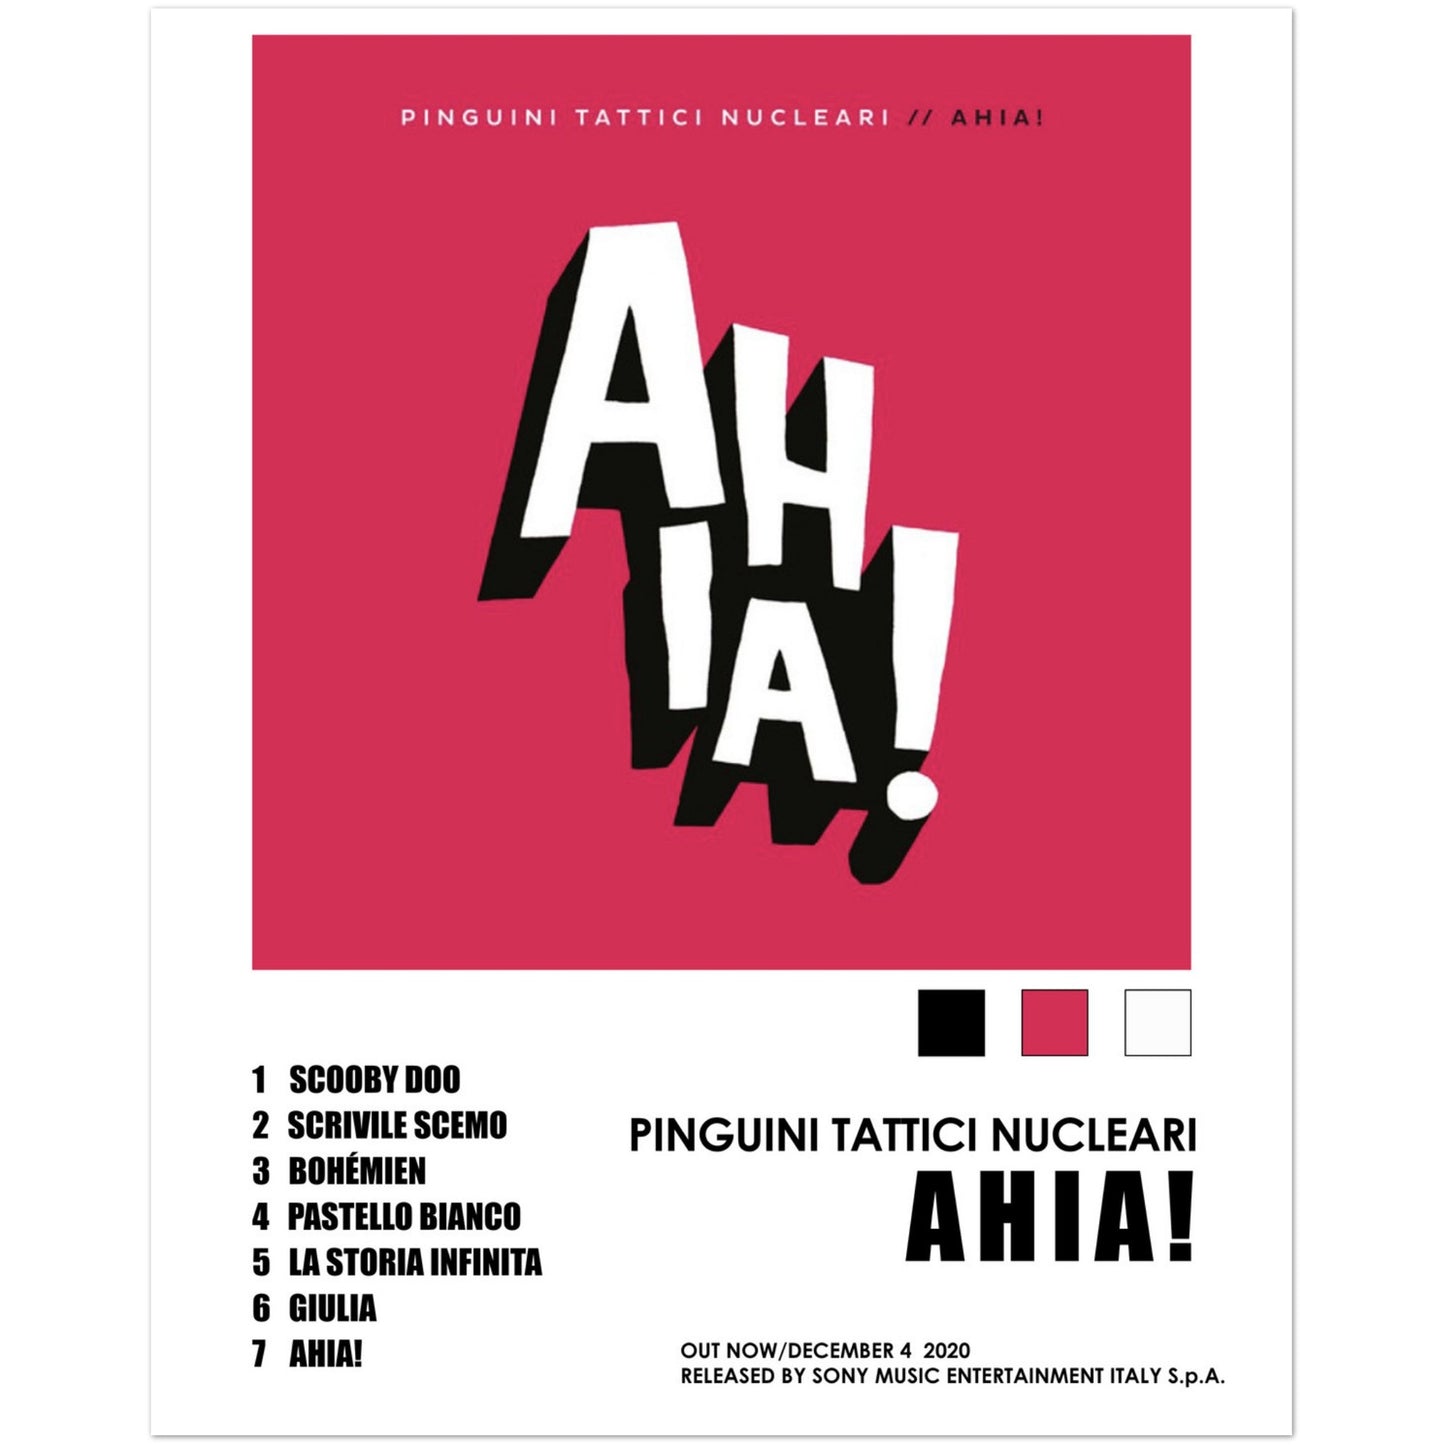 Poster album "Ahia!" (Pinguini tattici nucleari)